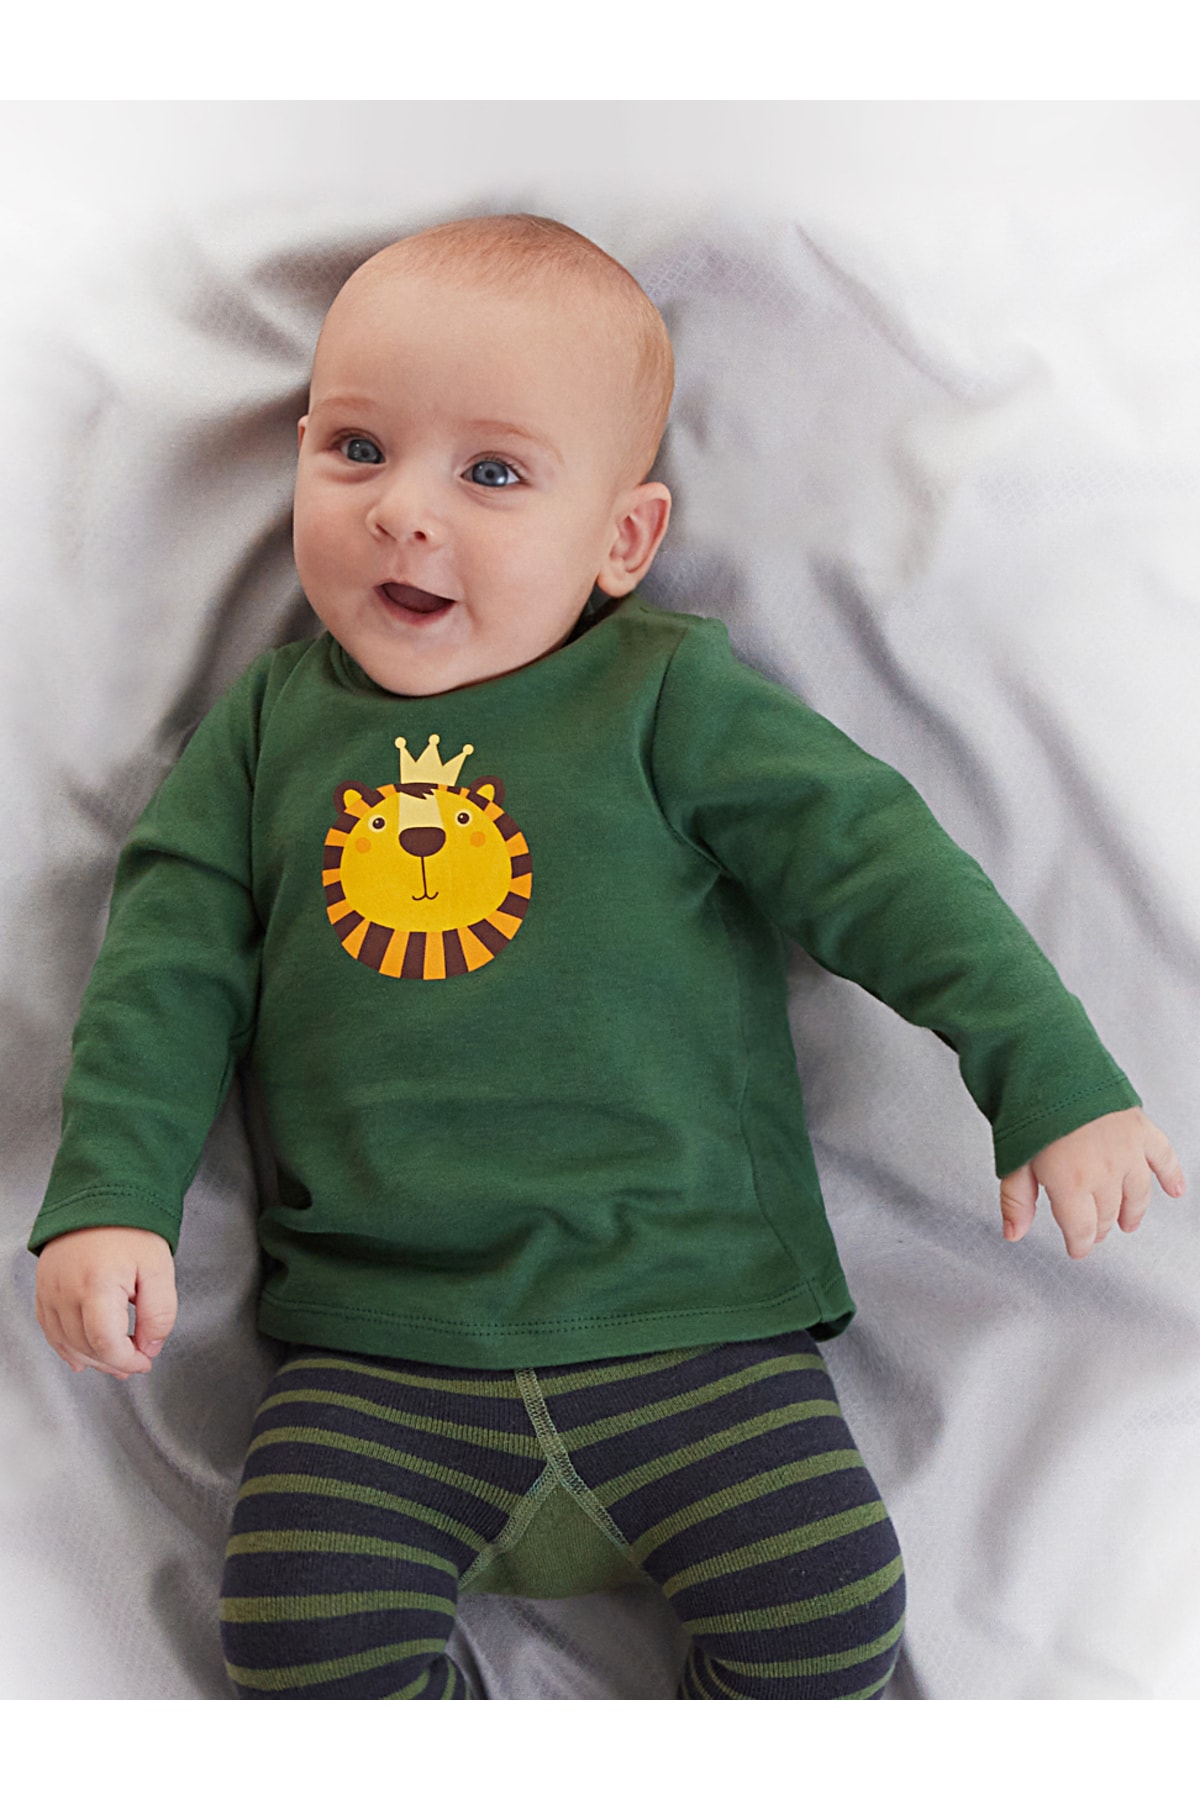 Denokids Lion Baby Boy Green T-shirt